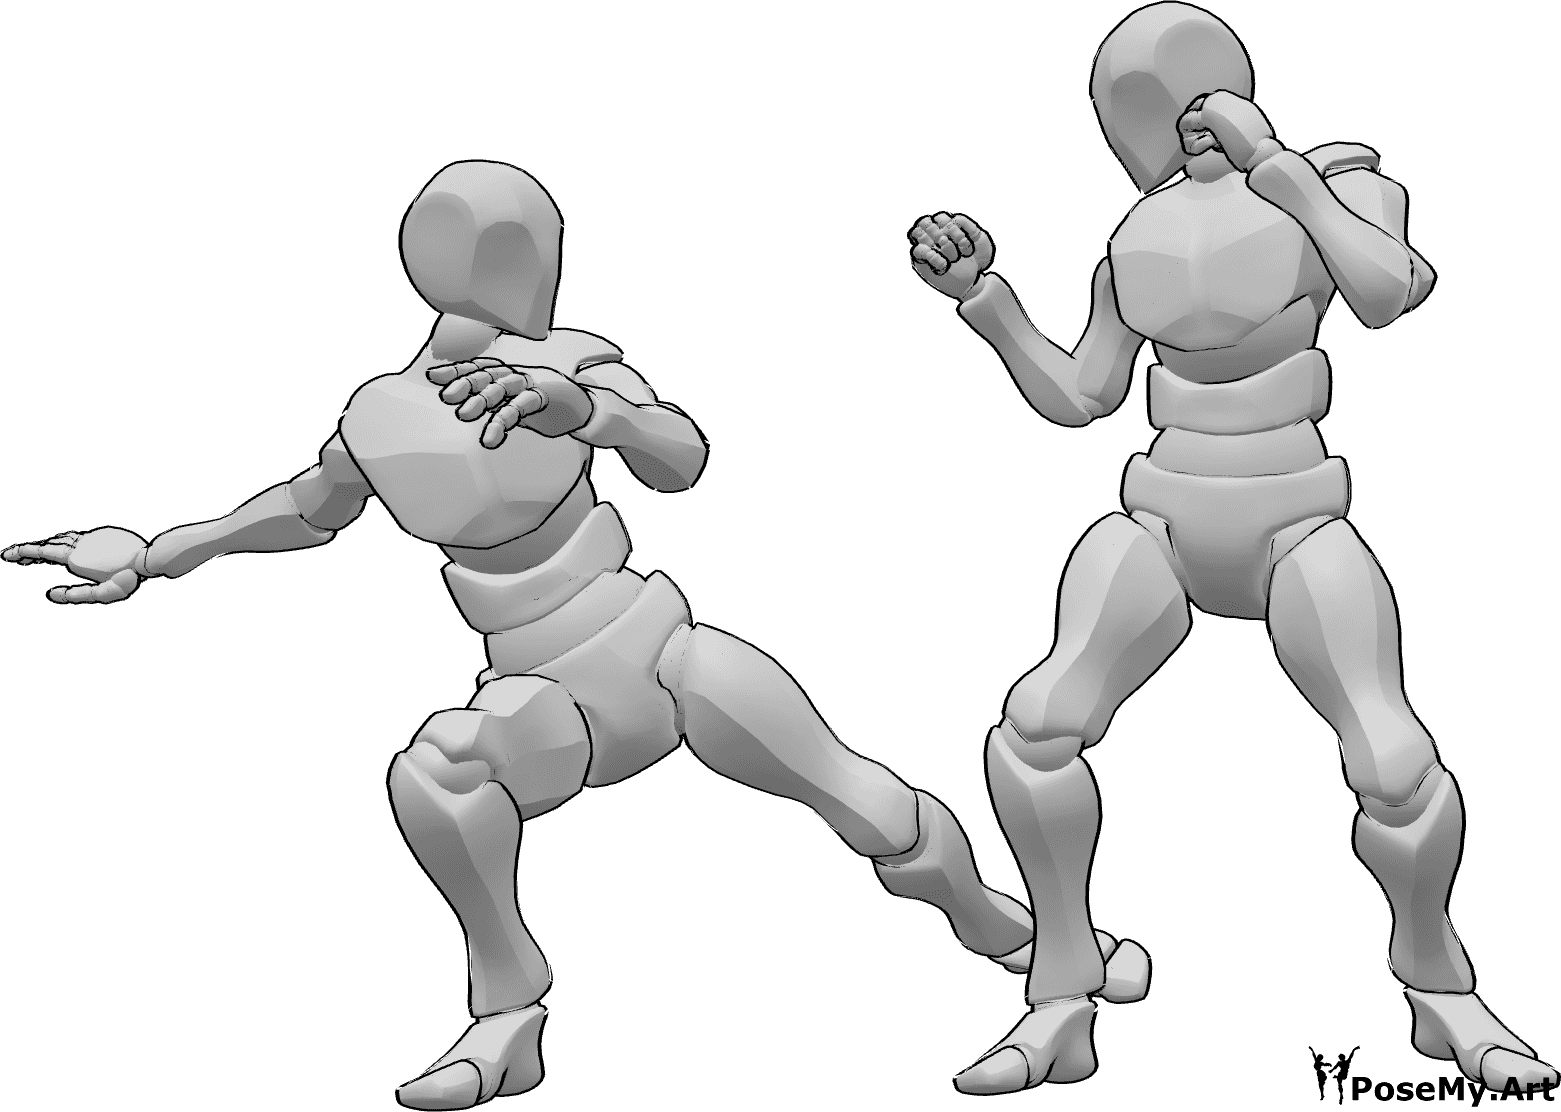 Referencia de poses- Postura de ataque con patada masculina - Macho ataca a otro macho, pateando su pierna derecha, referencia de pose de ataque de macho